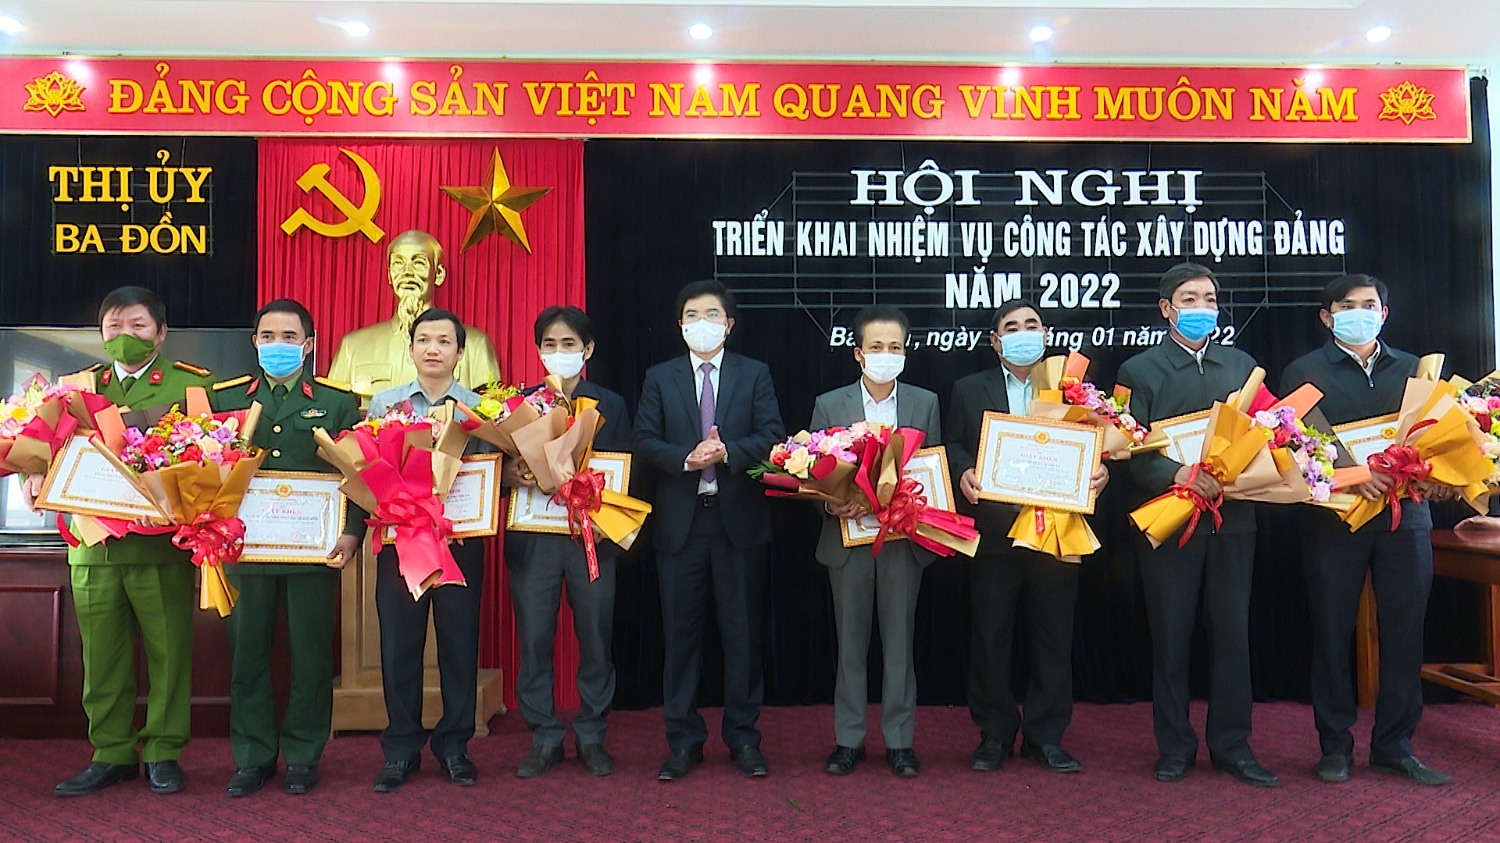 Đồng chí Trương An Ninh, Uỷ viên Ban Thường vụ Tỉnh uỷ, Bí thư Thị uỷ Ba Đồn biểu dương khen thưởng 08 tổ chức cơ sở Đảng có thành tích xuất sắc trong công tác xây dựng Đảng năm 2021